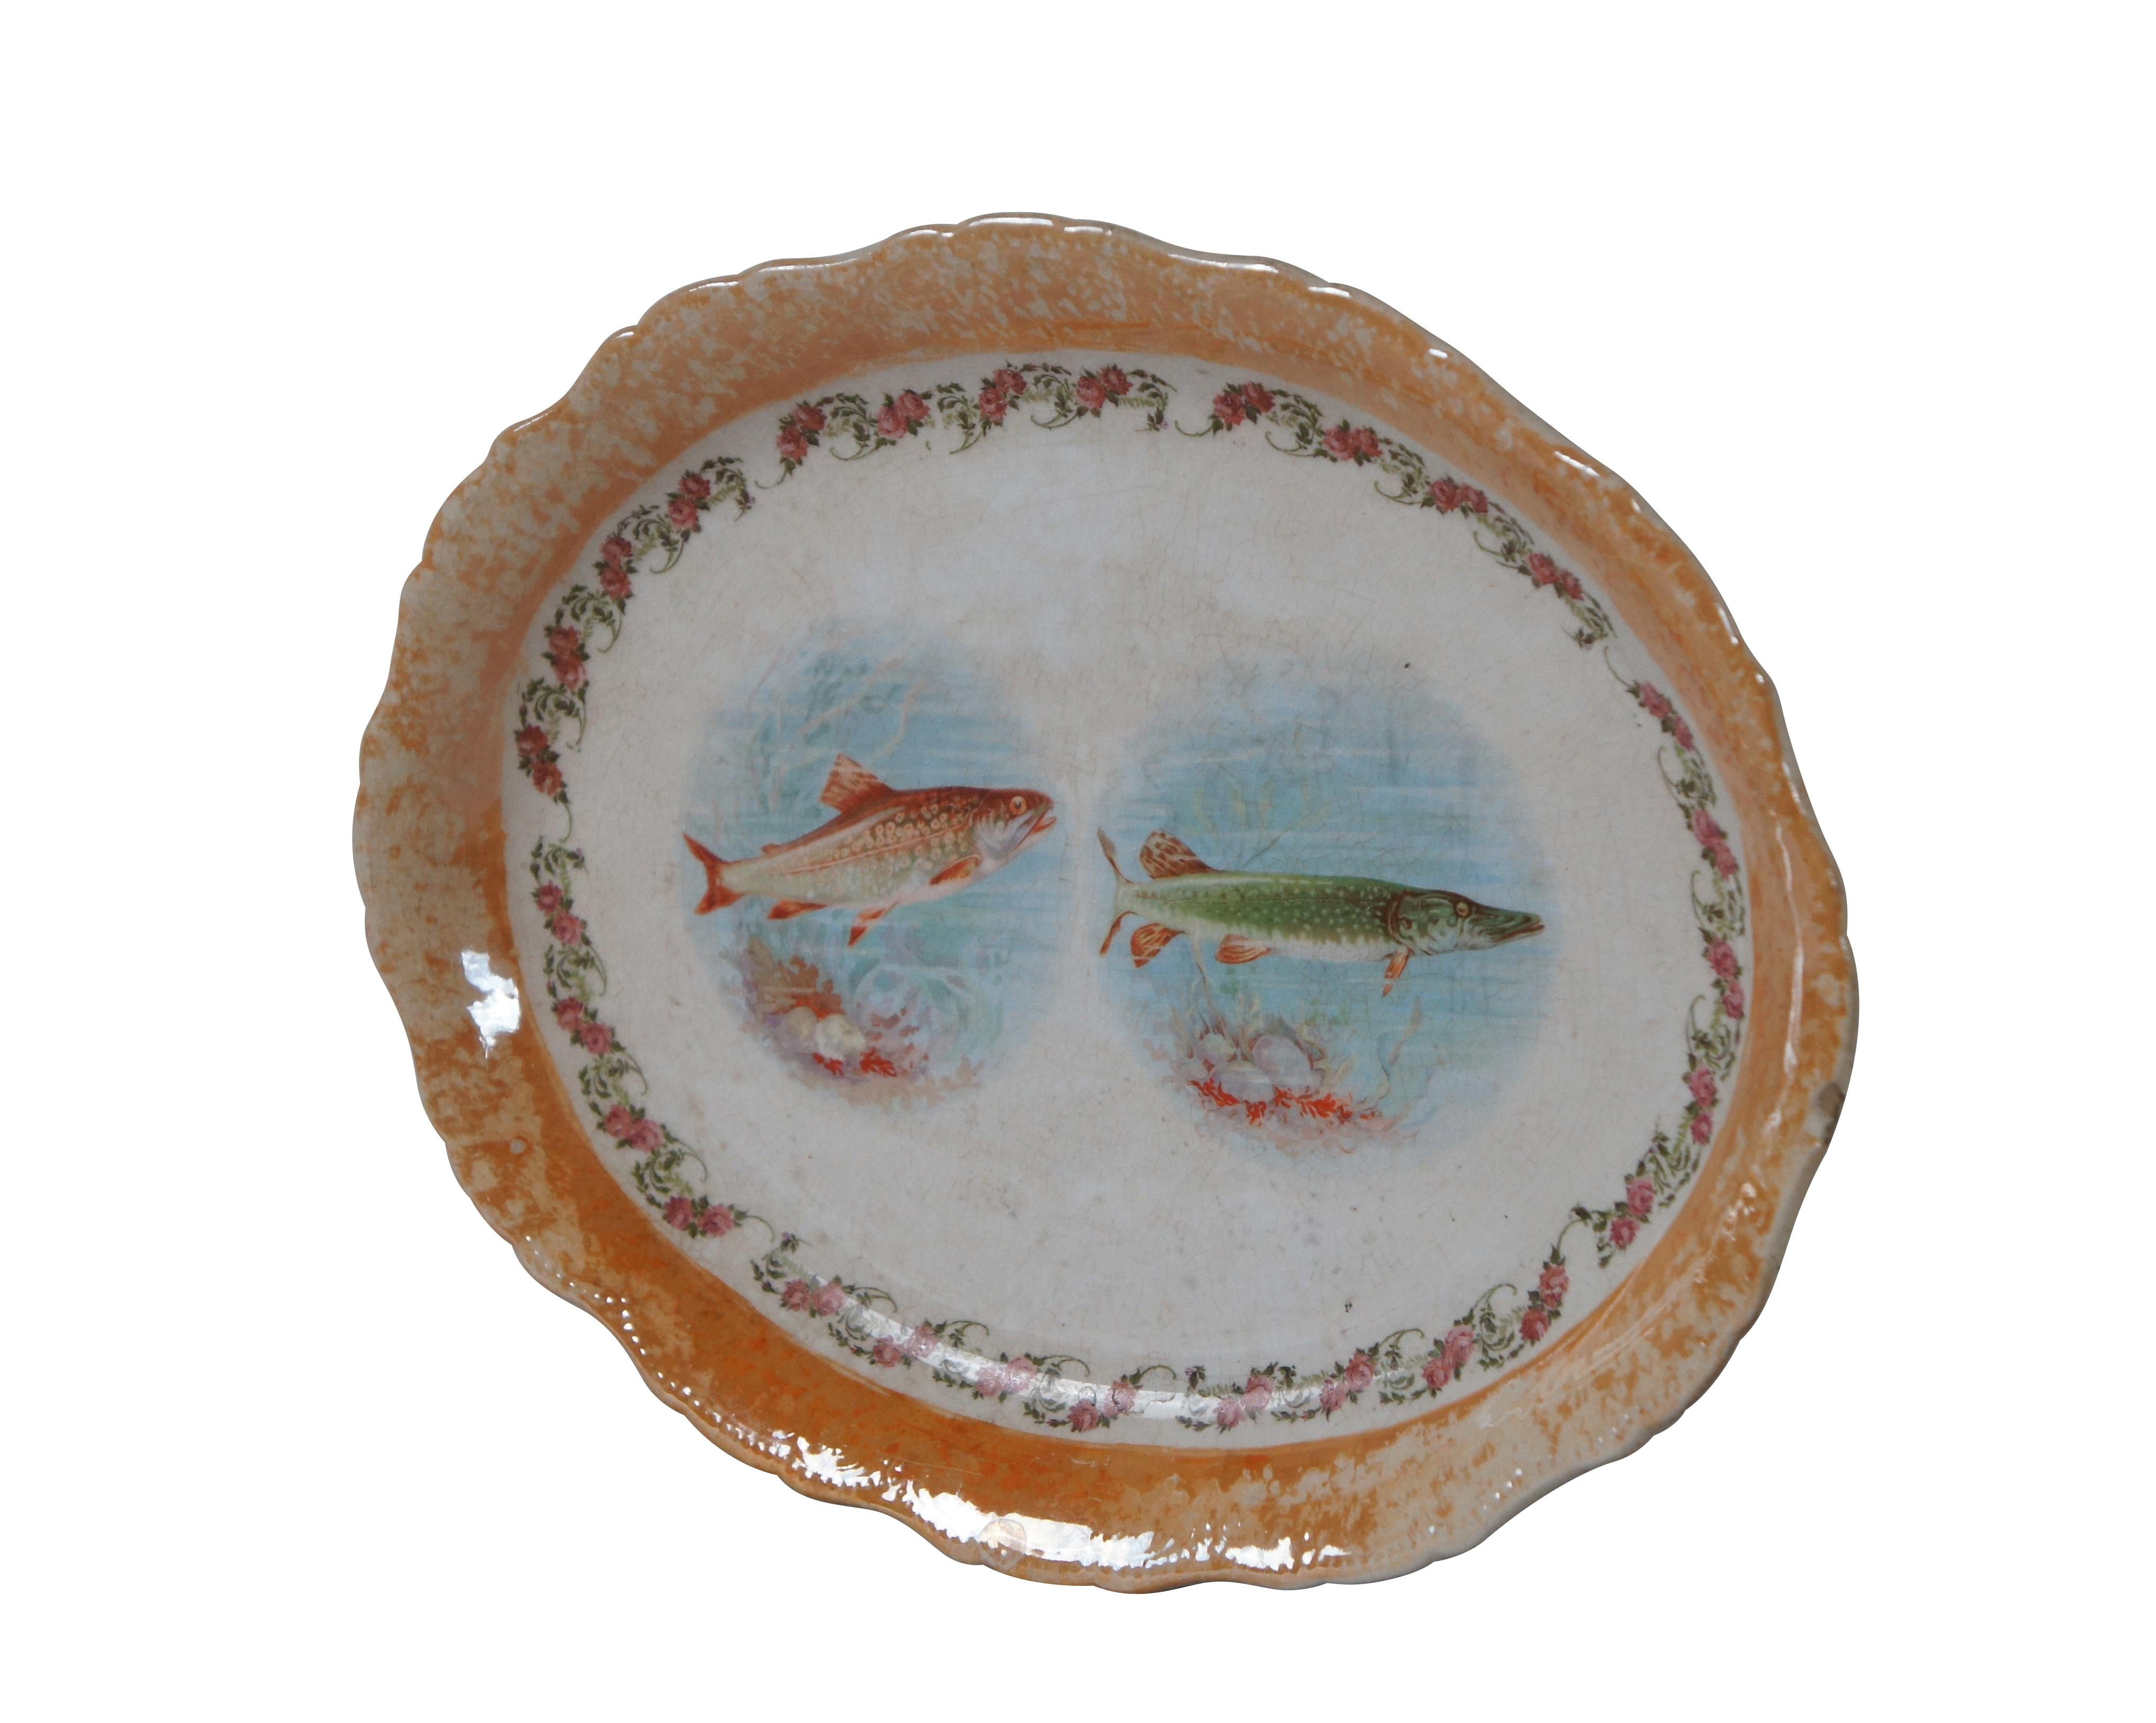 Ovale Servierplatte aus halbdurchsichtigem Porzellan des späten 19. bis frühen 20. Jahrhunderts von Knowles, Taylor und Knowles. Mit einem irisierenden orangefarbenen Rand und einer Rosengirlande aus Transferware um die Abbildungen einer Forelle und